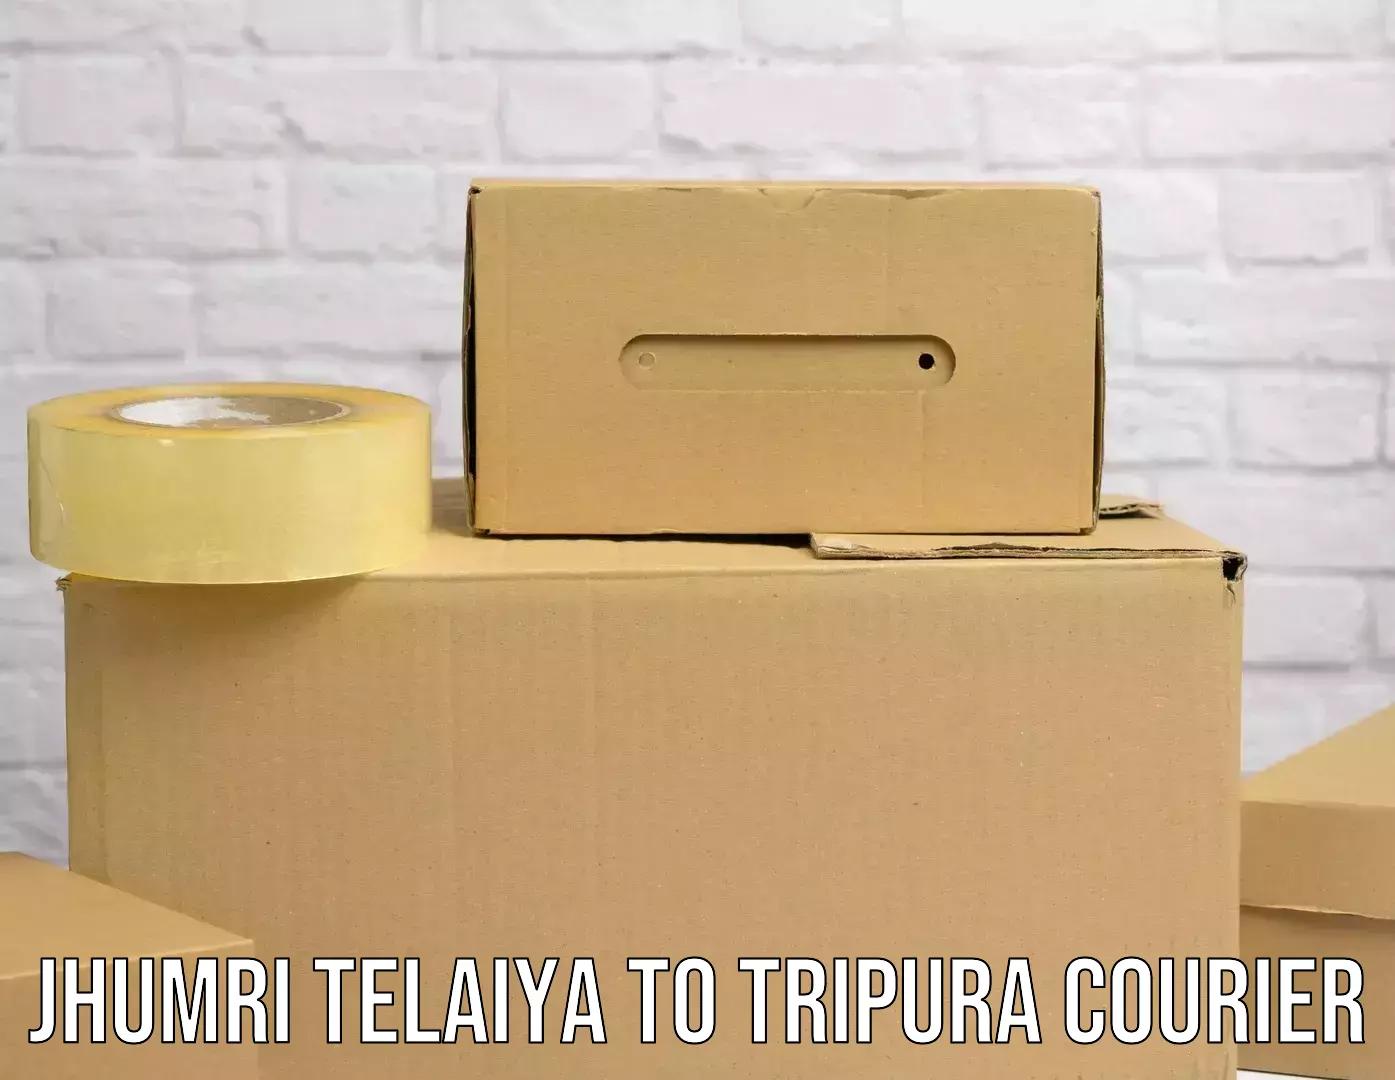 Subscription-based courier Jhumri Telaiya to Dharmanagar